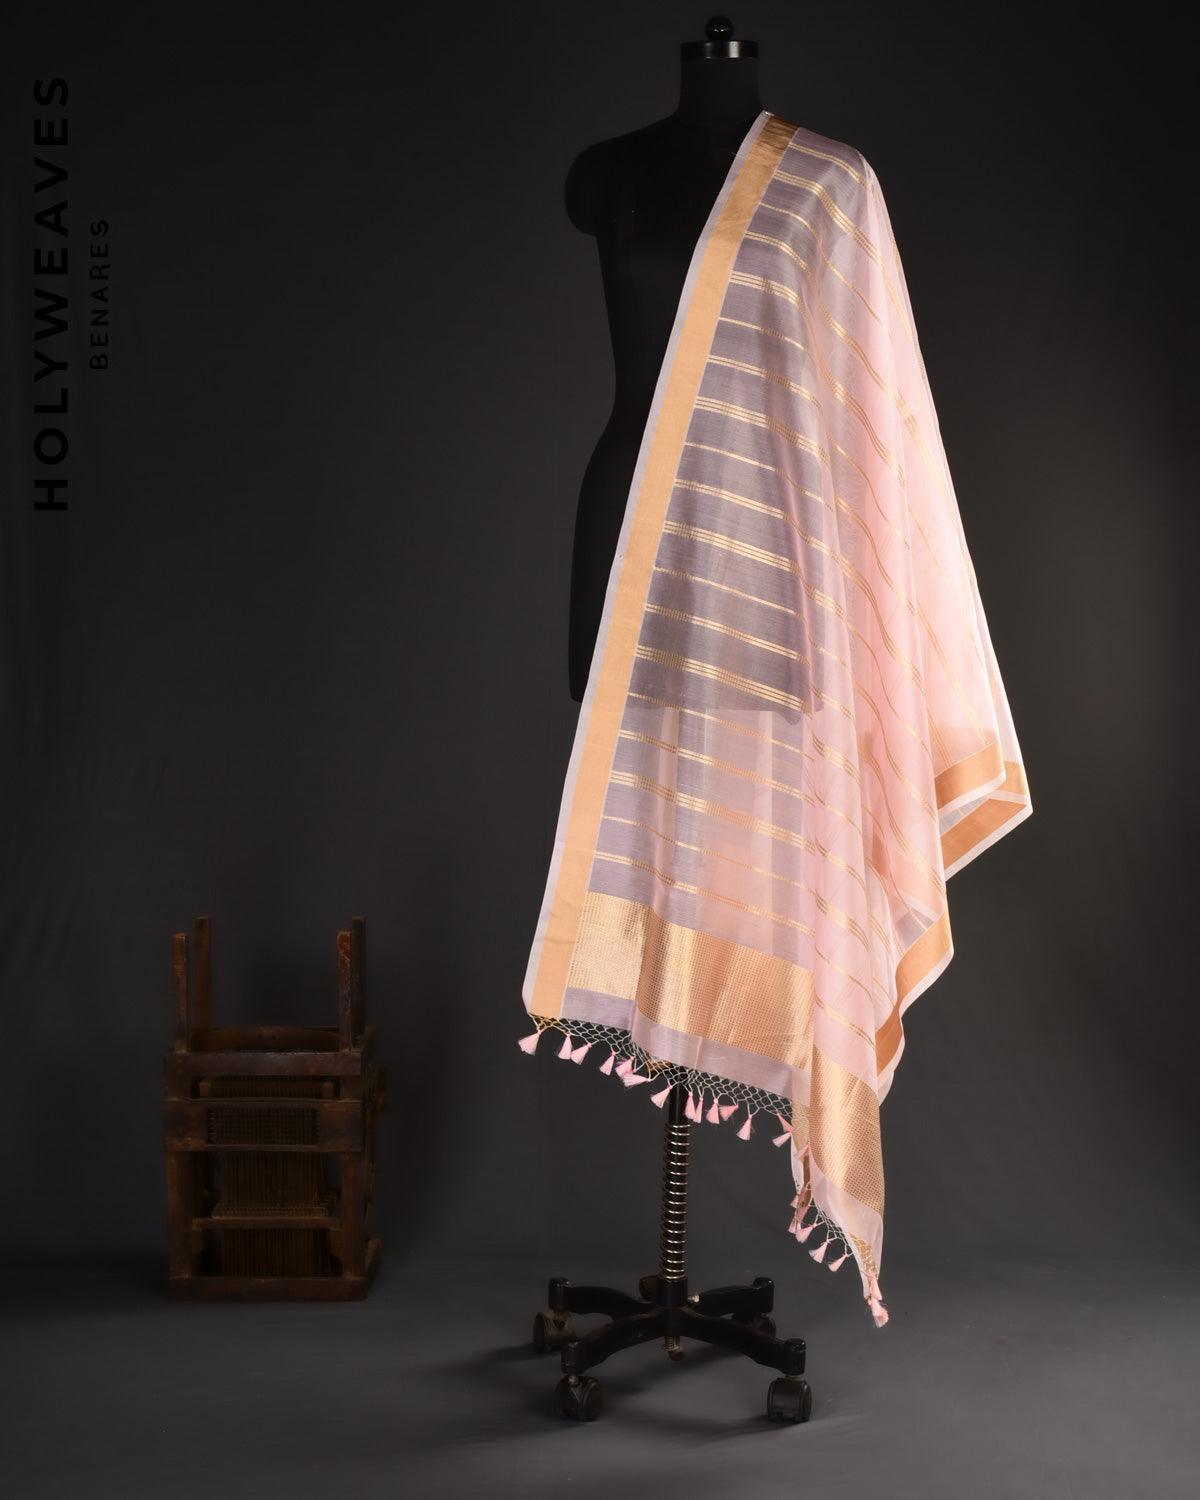 Pink Banarasi Golden Stripes Brocade Woven Kora Silk Dupatta - By HolyWeaves, Benares